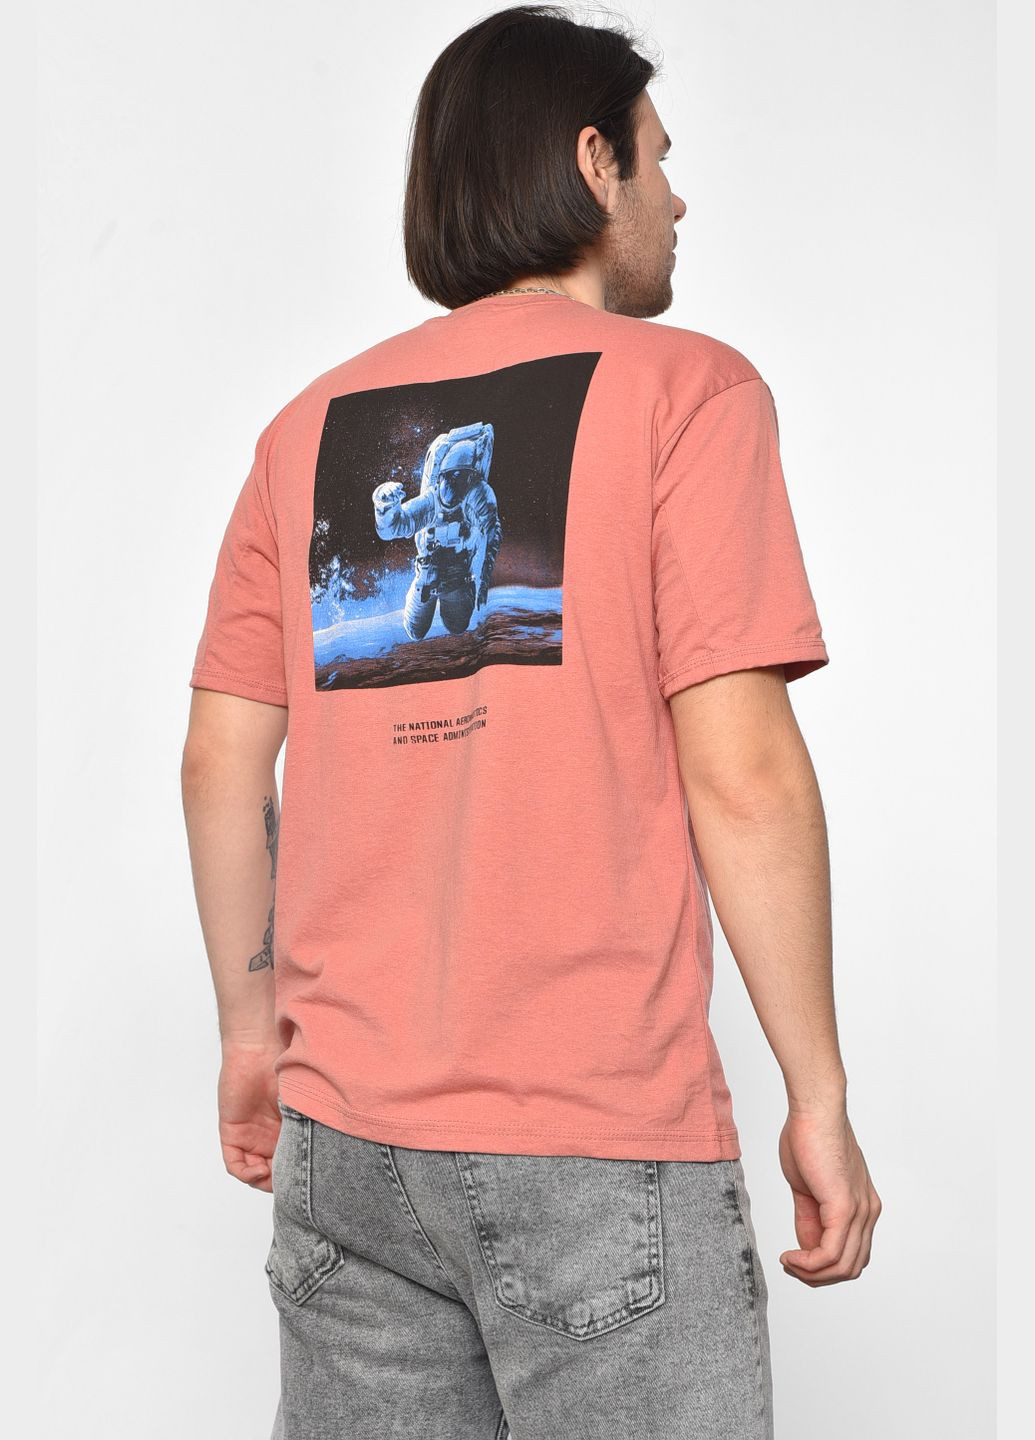 Терракотовая футболка мужская полубатальная терракотового цвета Let's Shop